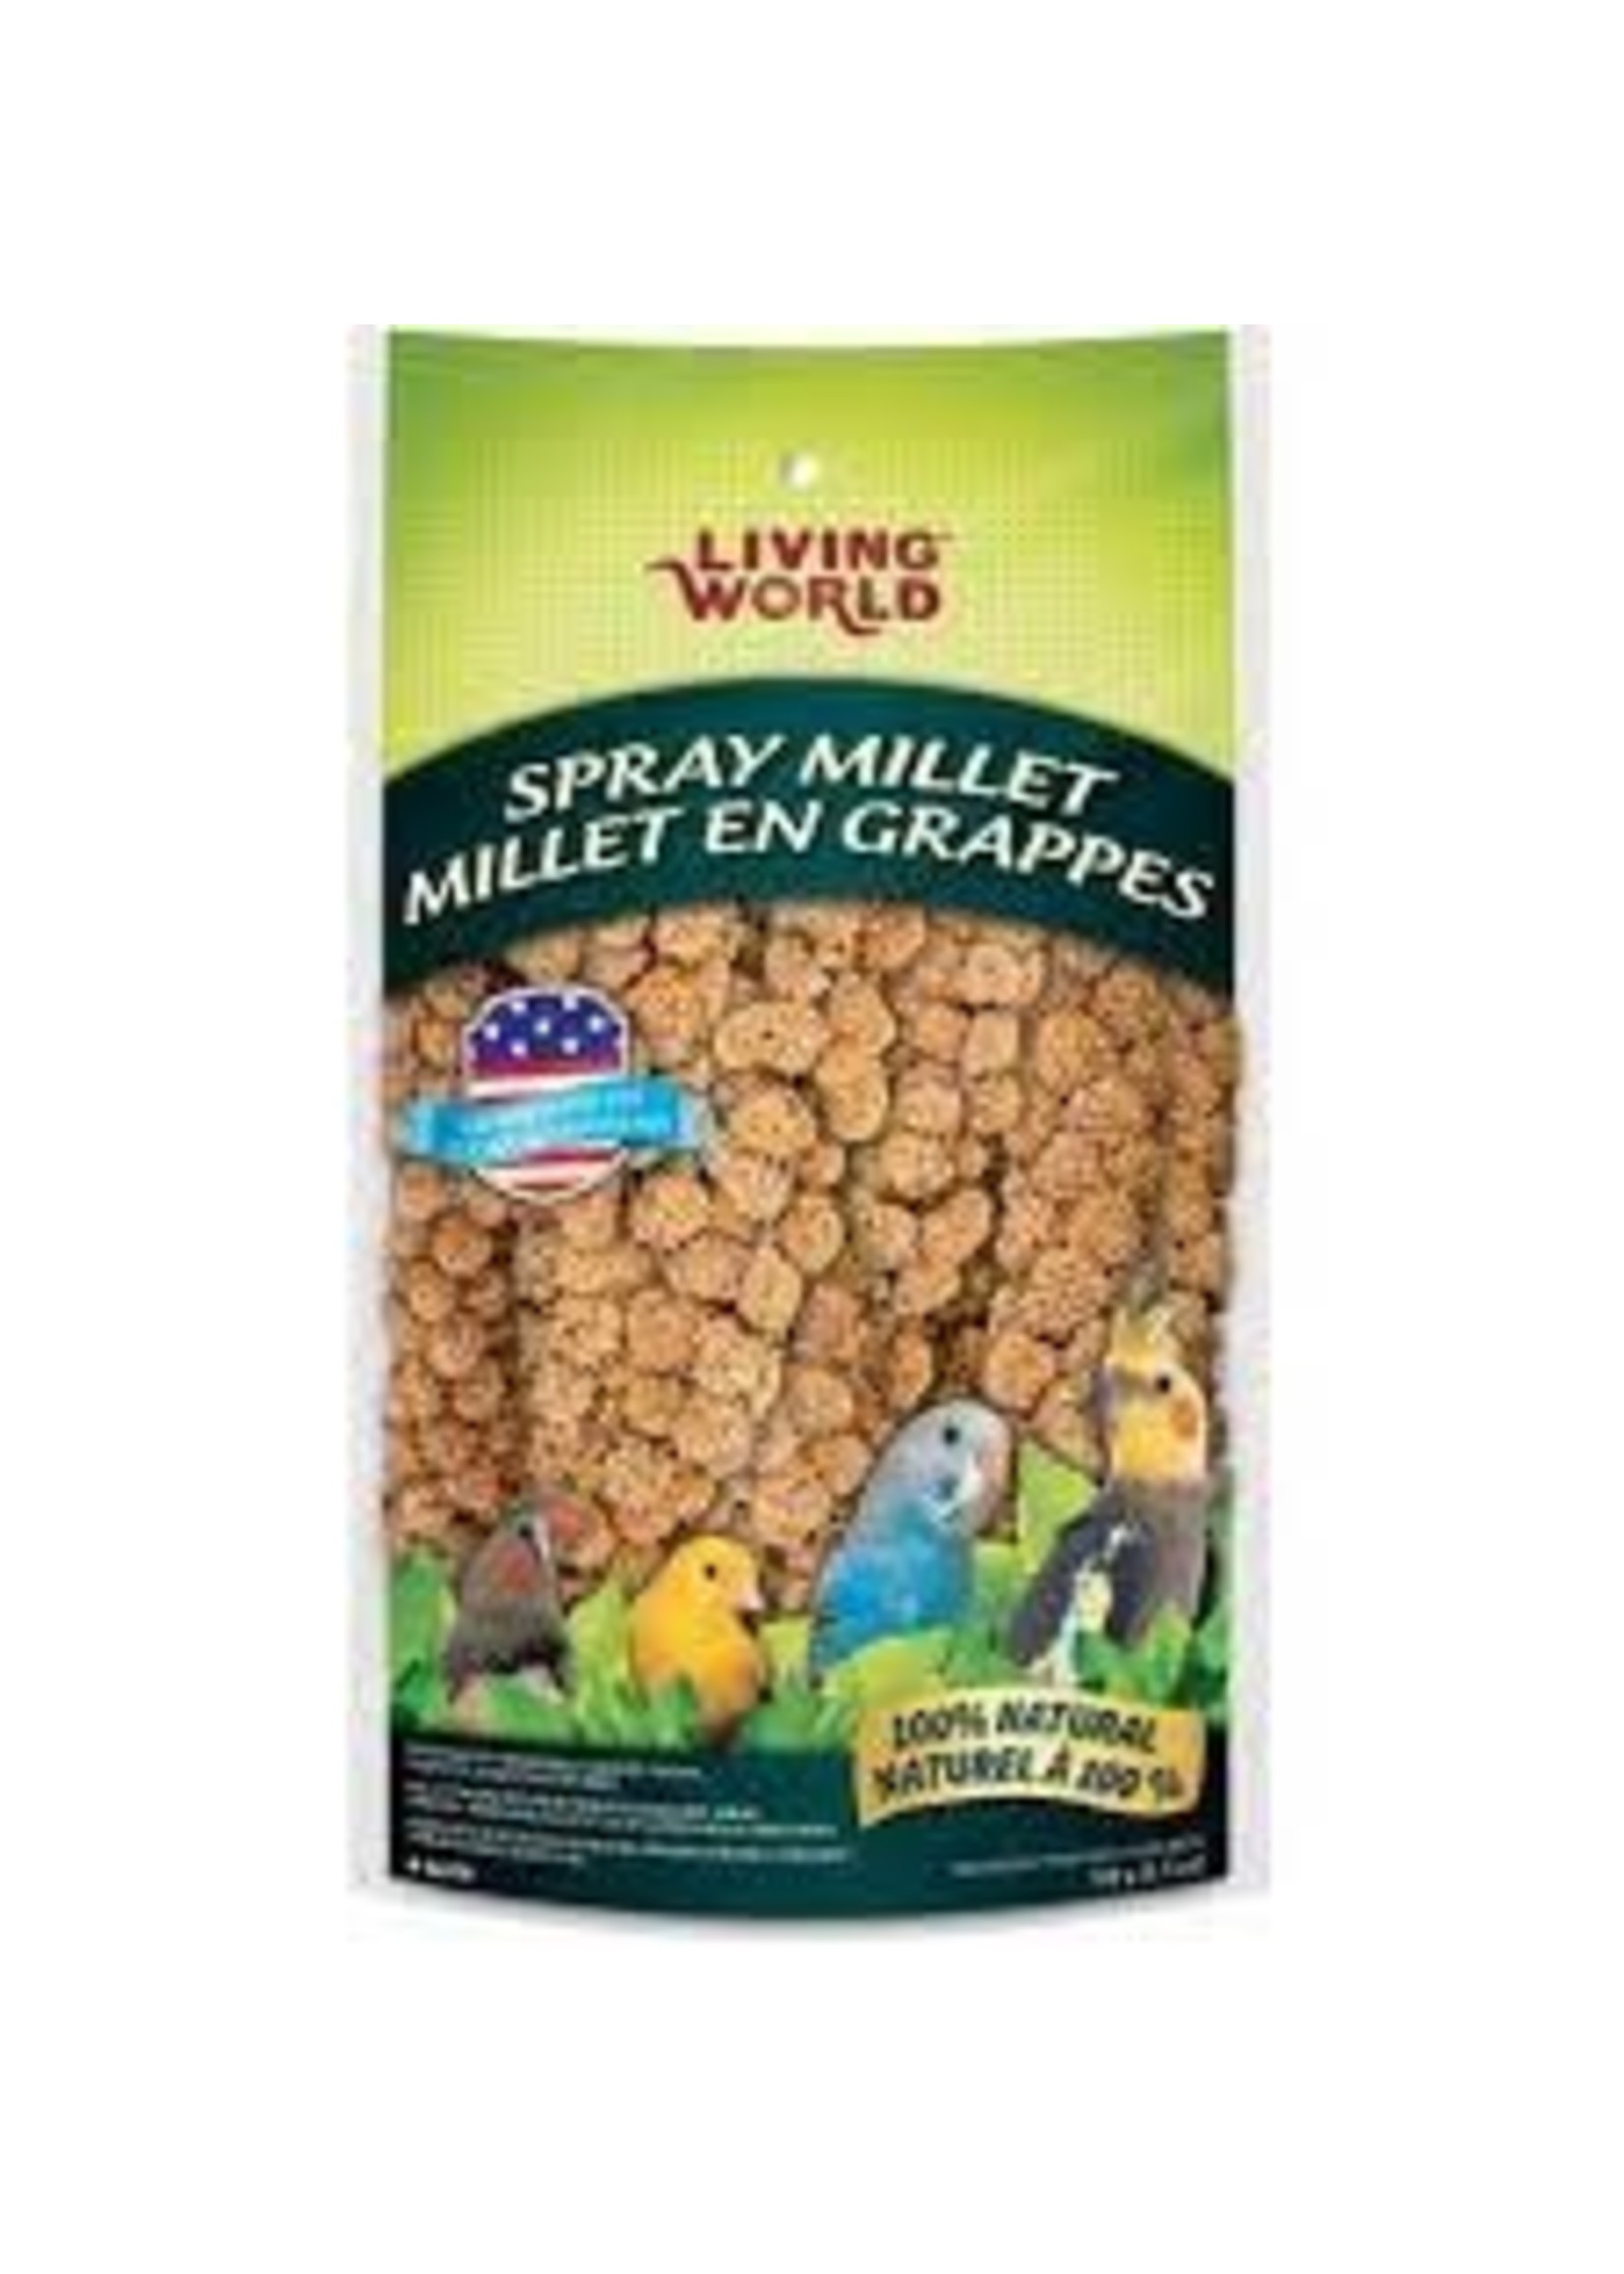 Living World Living World - Spray Millet